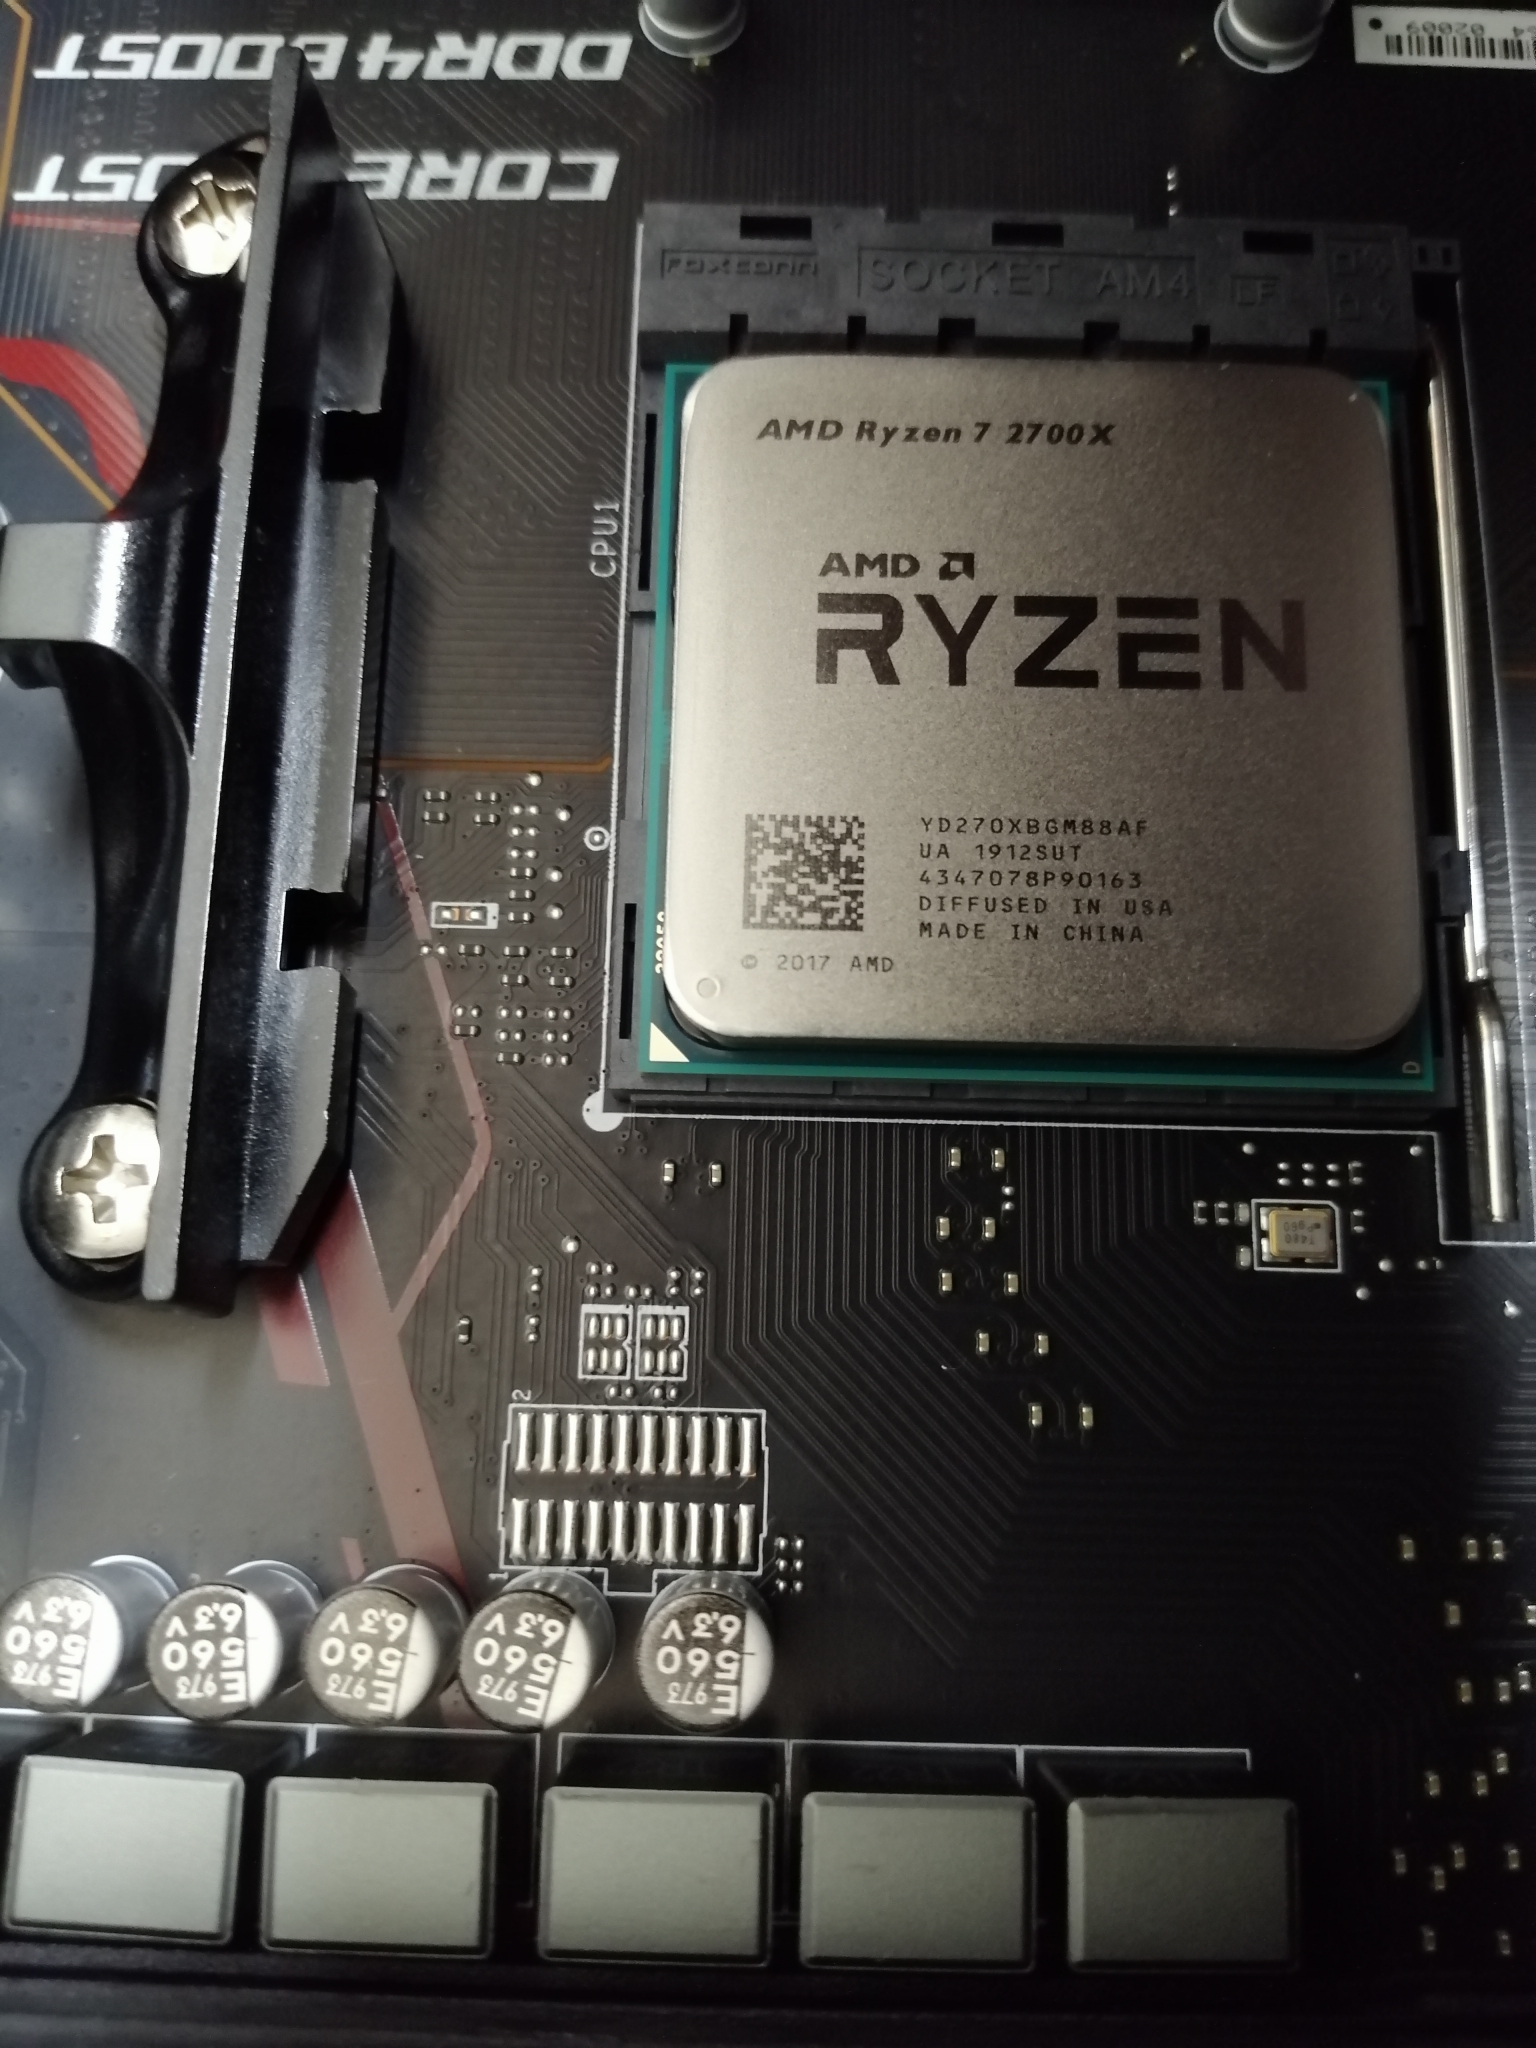 Райзен какой сокет. Ryzen 7 2700x. AMD 7 2700. АМД райзер 7 2700. Процессор AMD Ryzen 7 2700x Box.